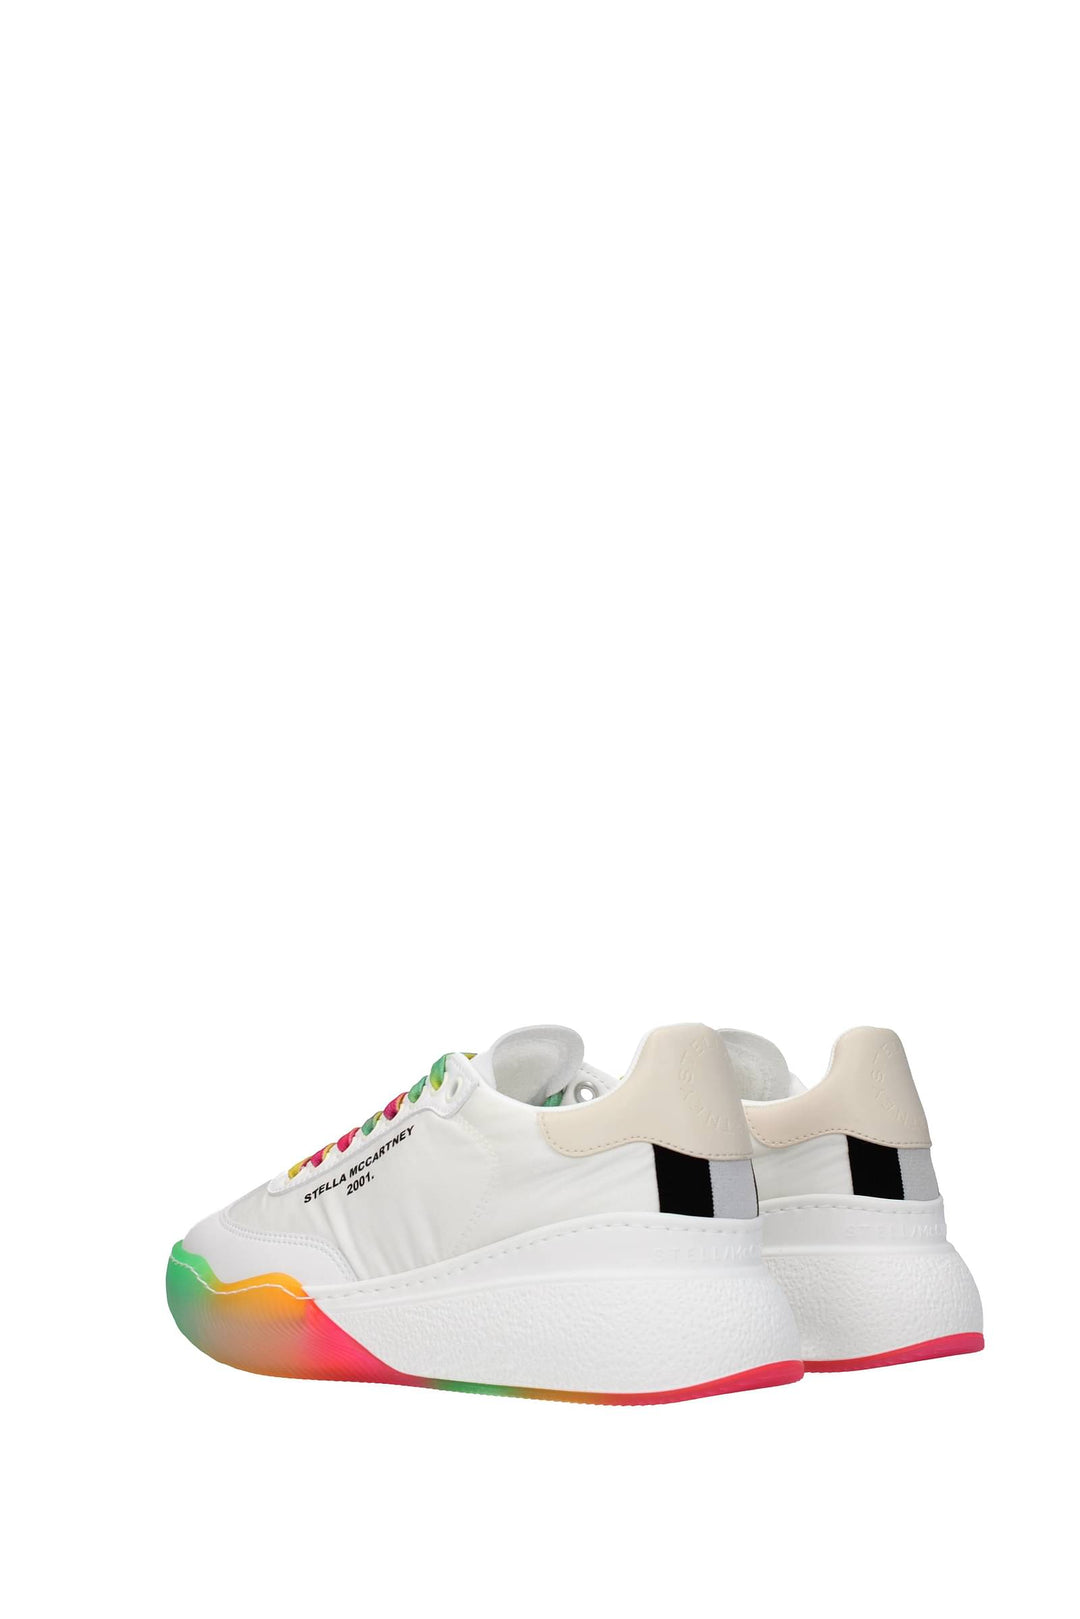 Sneakers Eco Pelle Bianco Multicolore - Stella McCartney - Donna